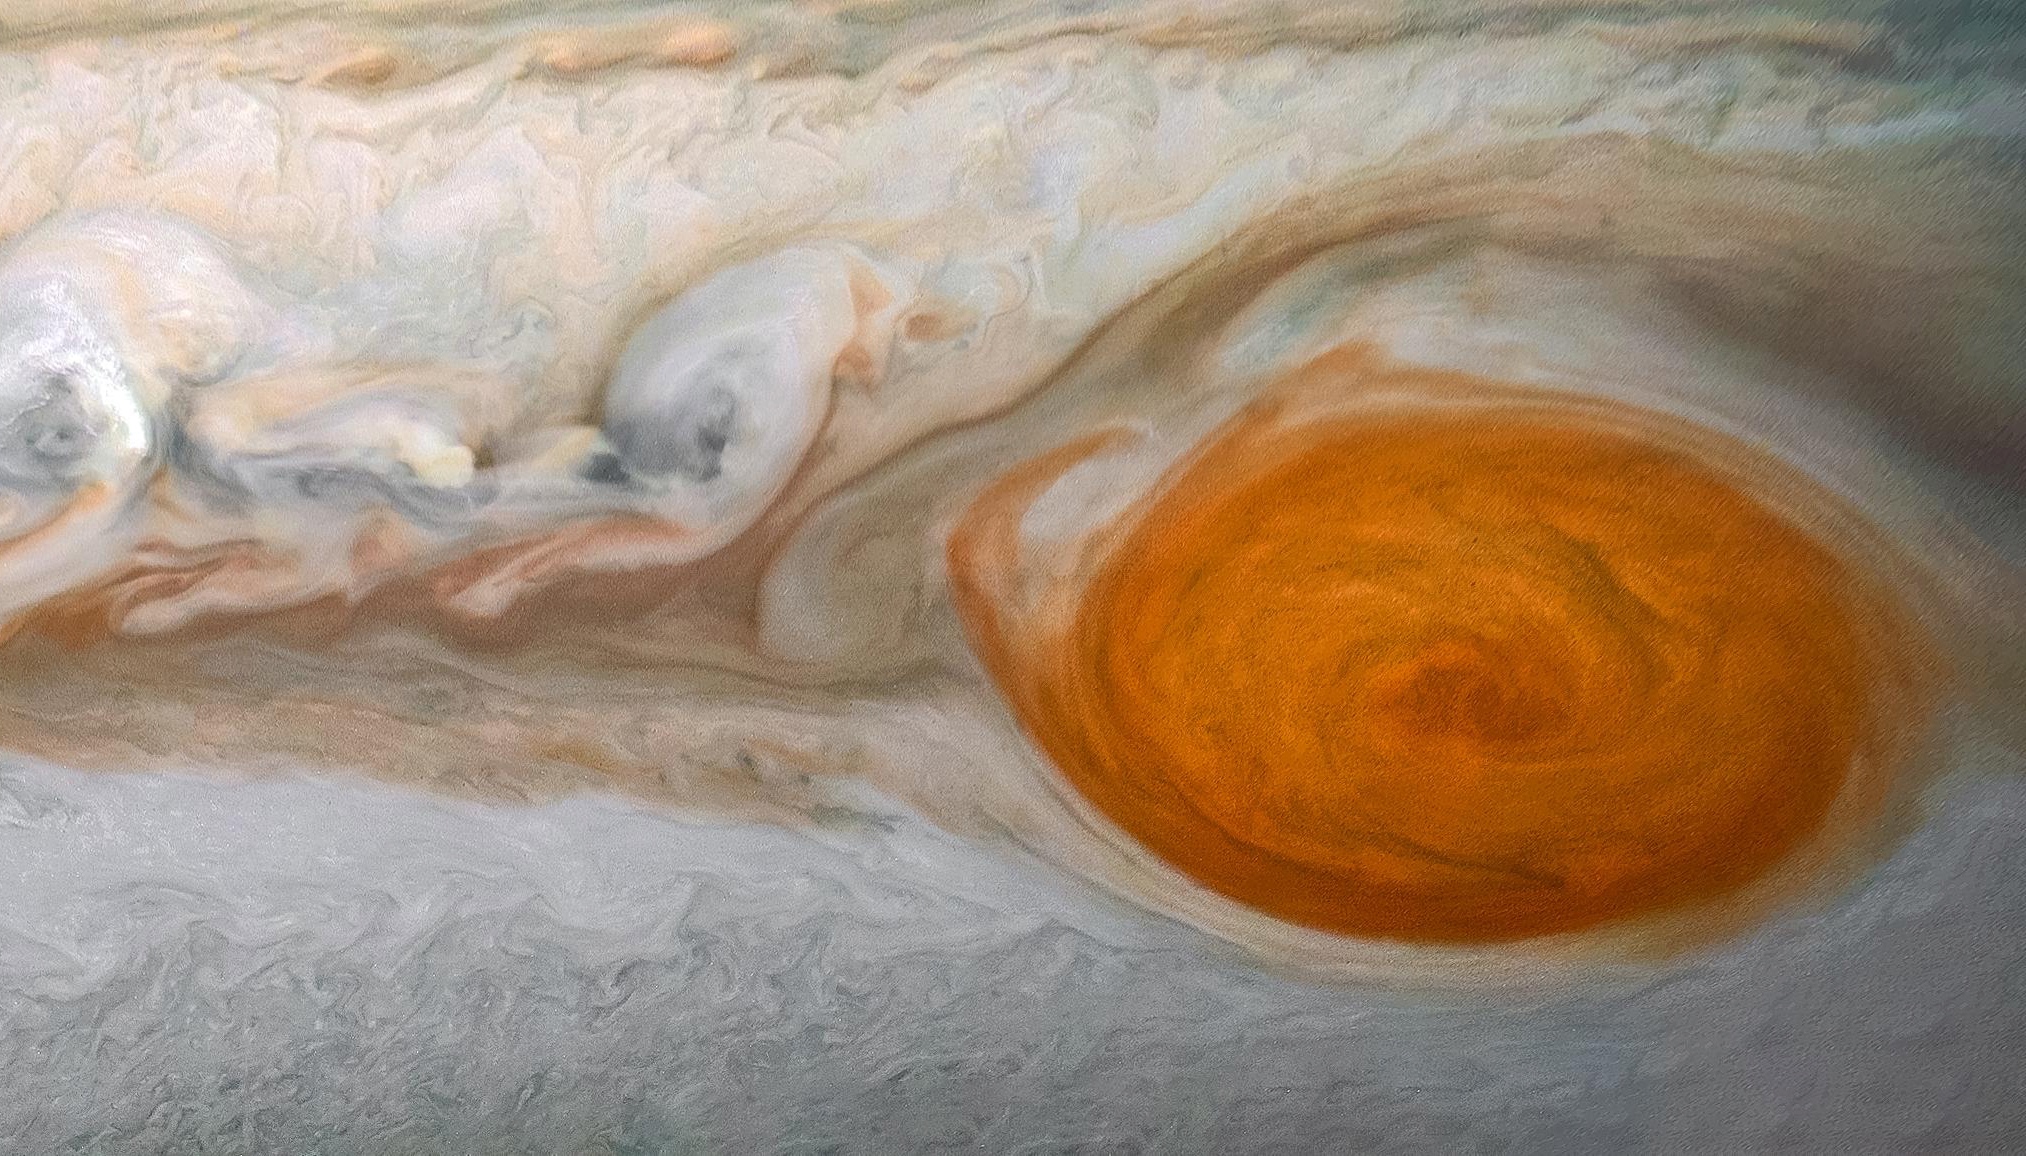 Des données du télescope spatial Hubble montrent que les vents aux limites de la Grande Tache rouge de Jupiter se sont accélérés au cours de ces dix dernières années. Photo : détails de la Grande Tache rouge de Jupiter photographiée par la sonde spatiale Juno. © Nasa, JPL-Caltech, SwRI, MSSS, Image processing by Kevin M. Gill, © CC BY